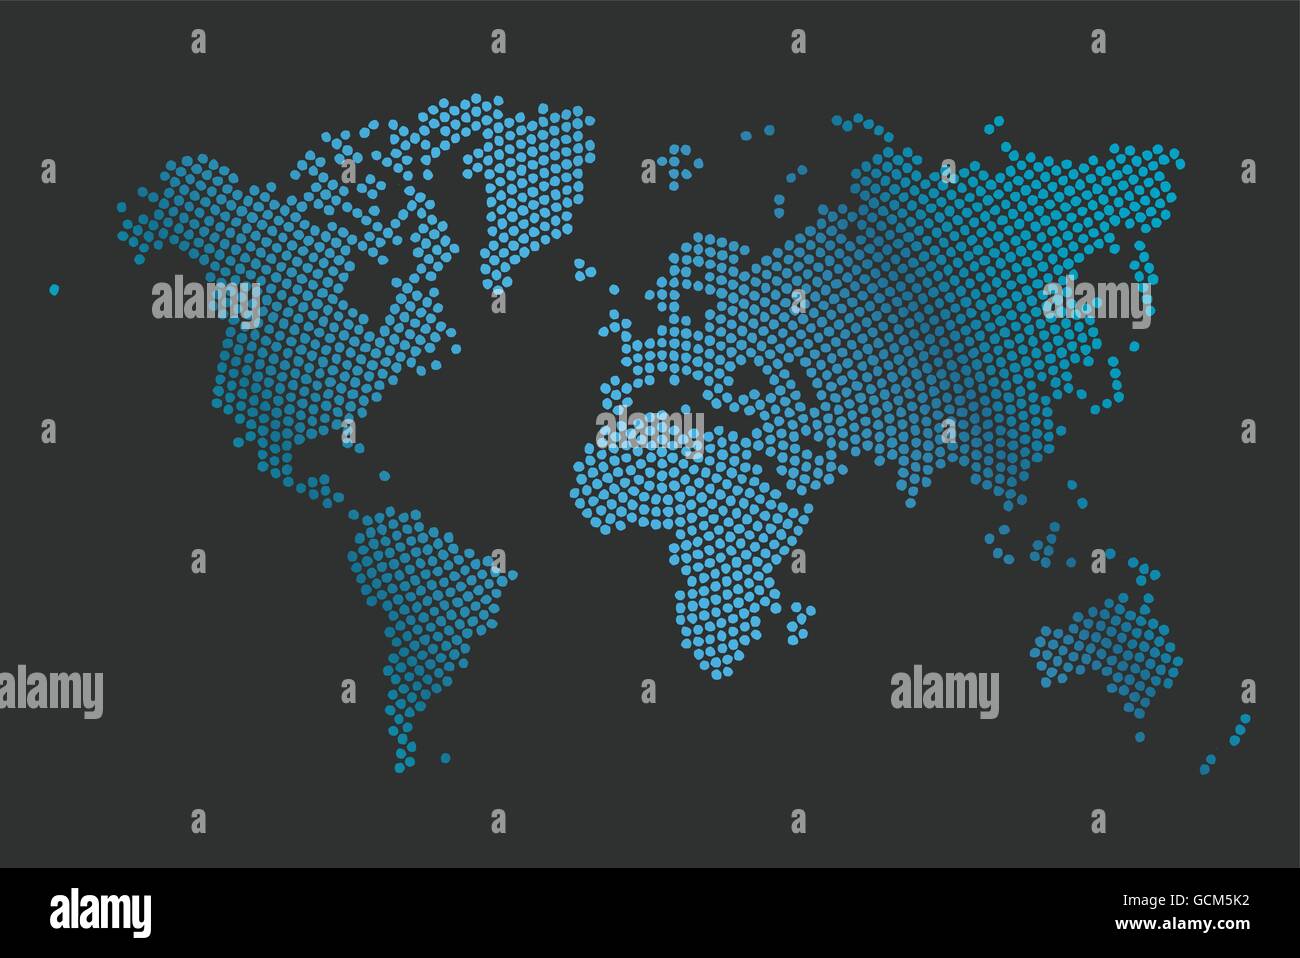 Abstrakte Computer Grafik Weltkarte der Runde Punkte. Vektor-Illustration. Stock Vektor